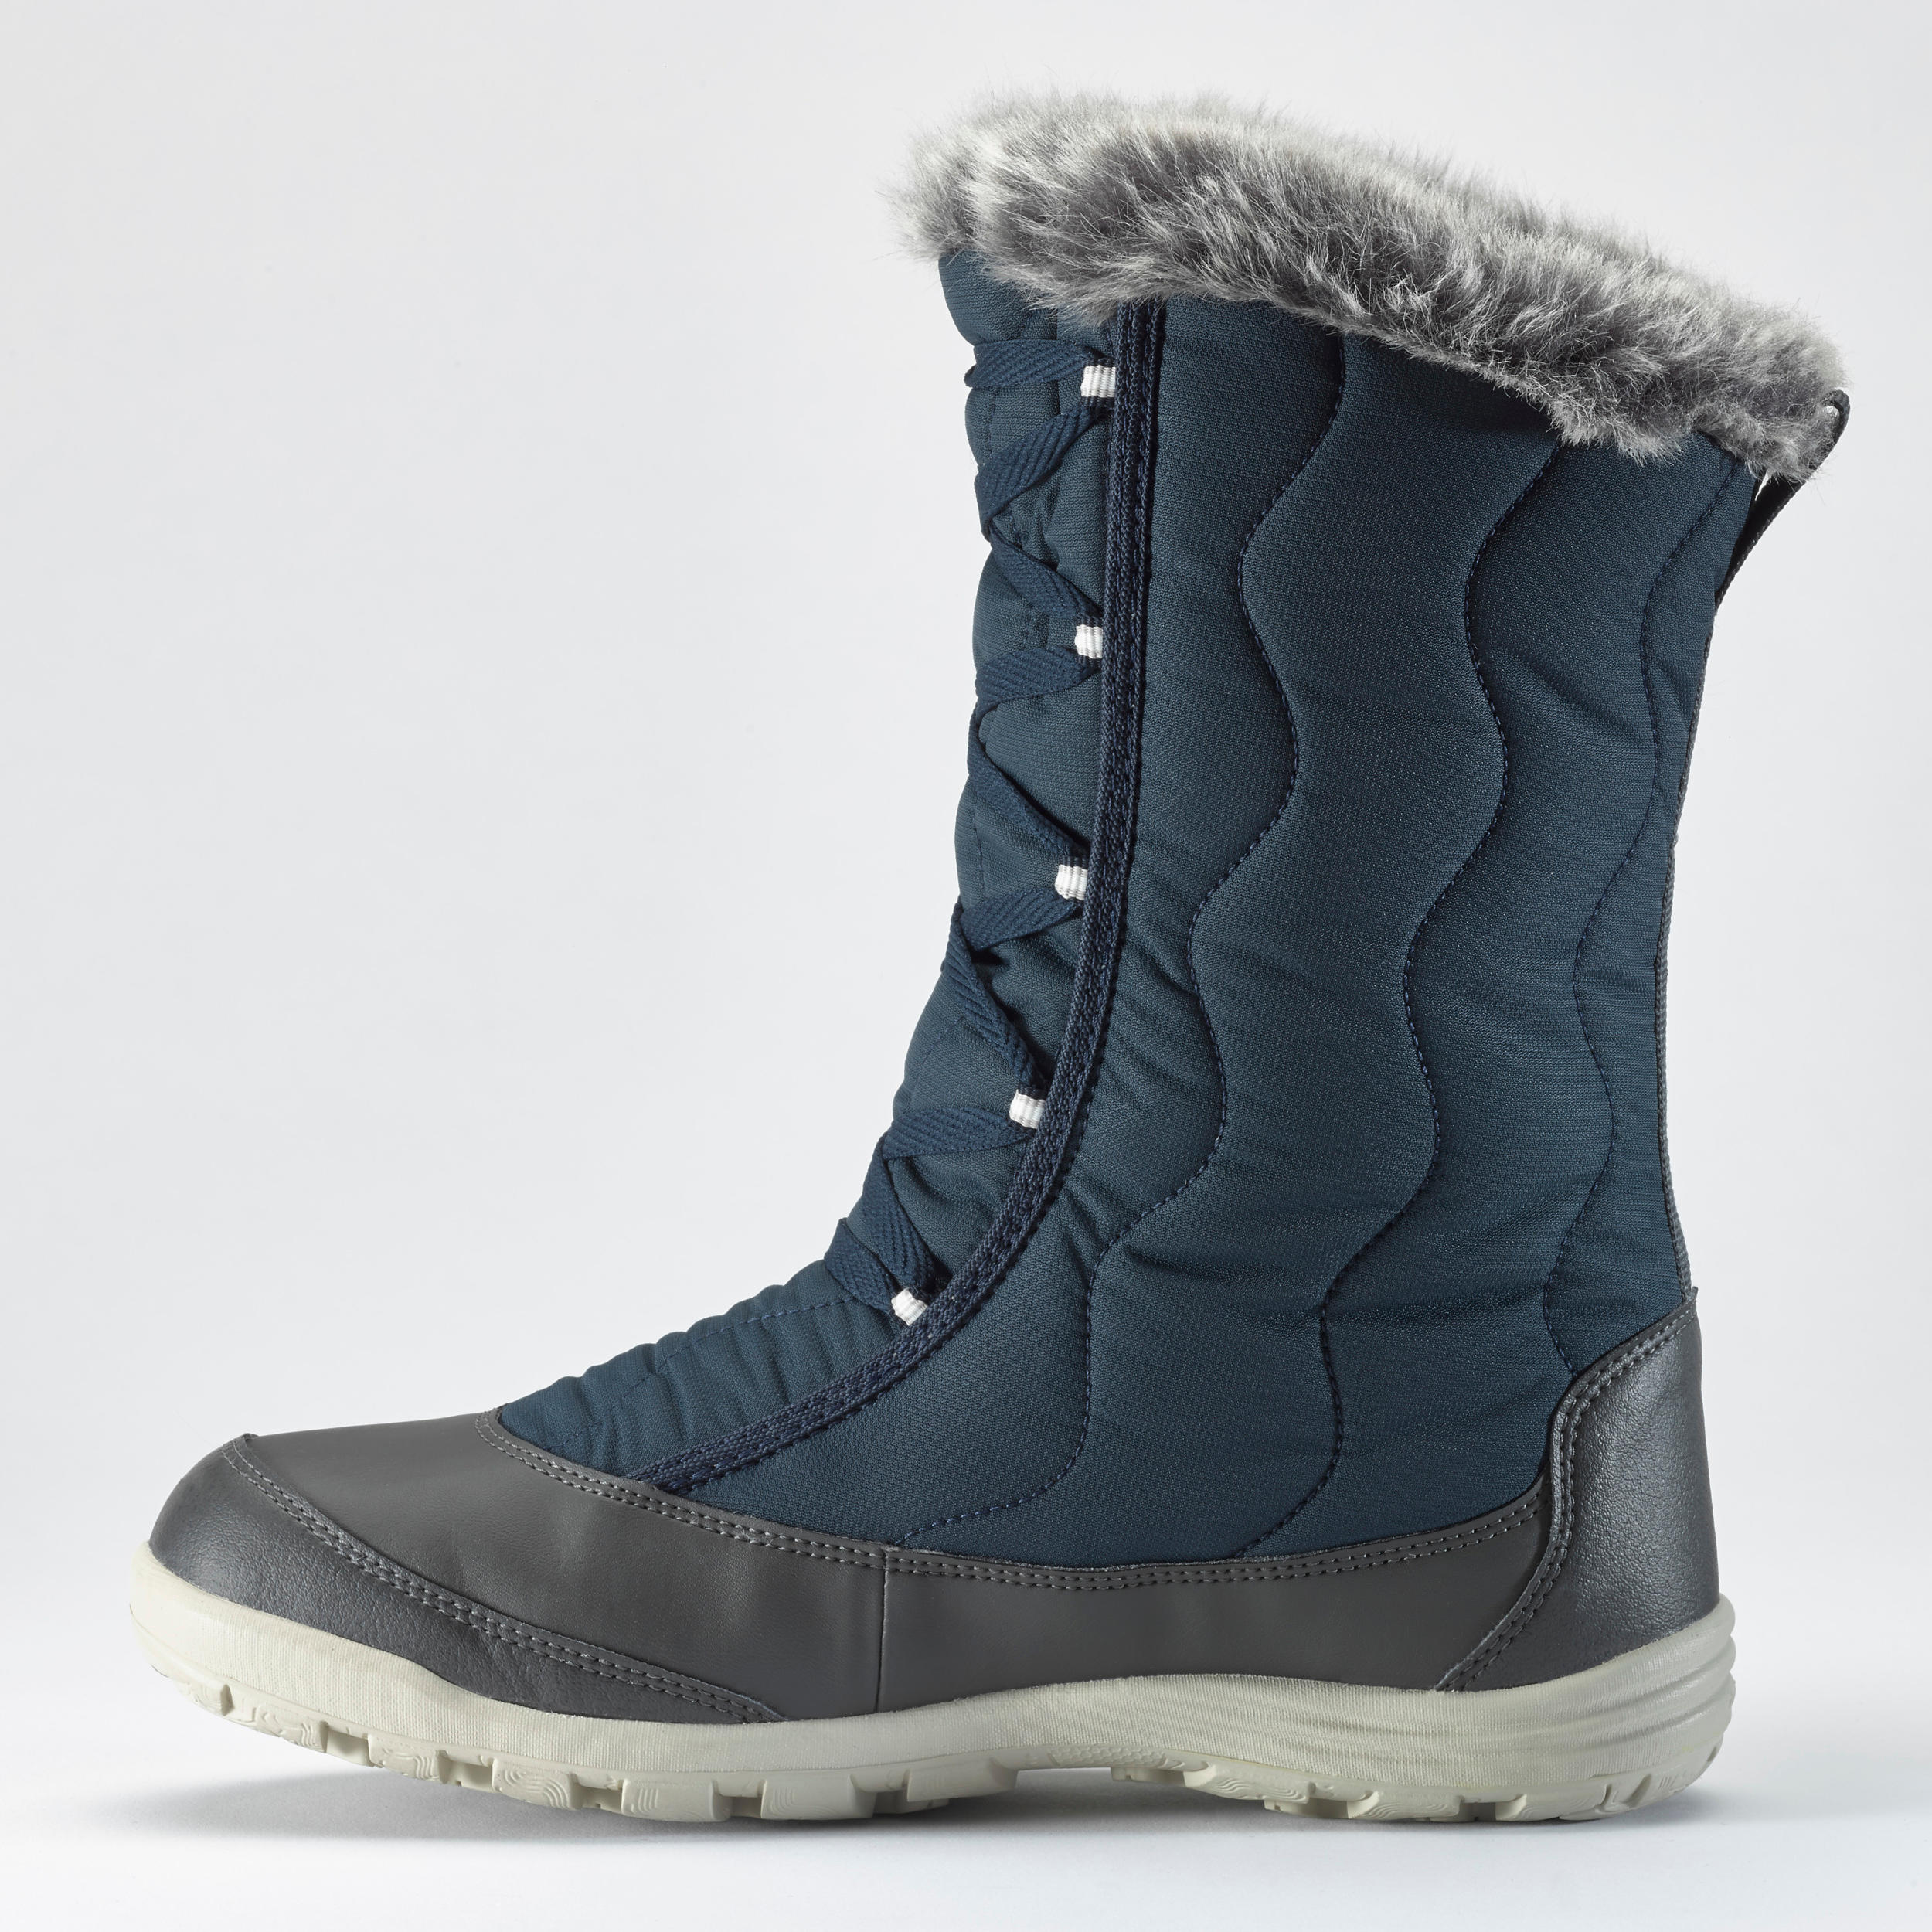 Women's Winter Boots - SH 500 - QUECHUA